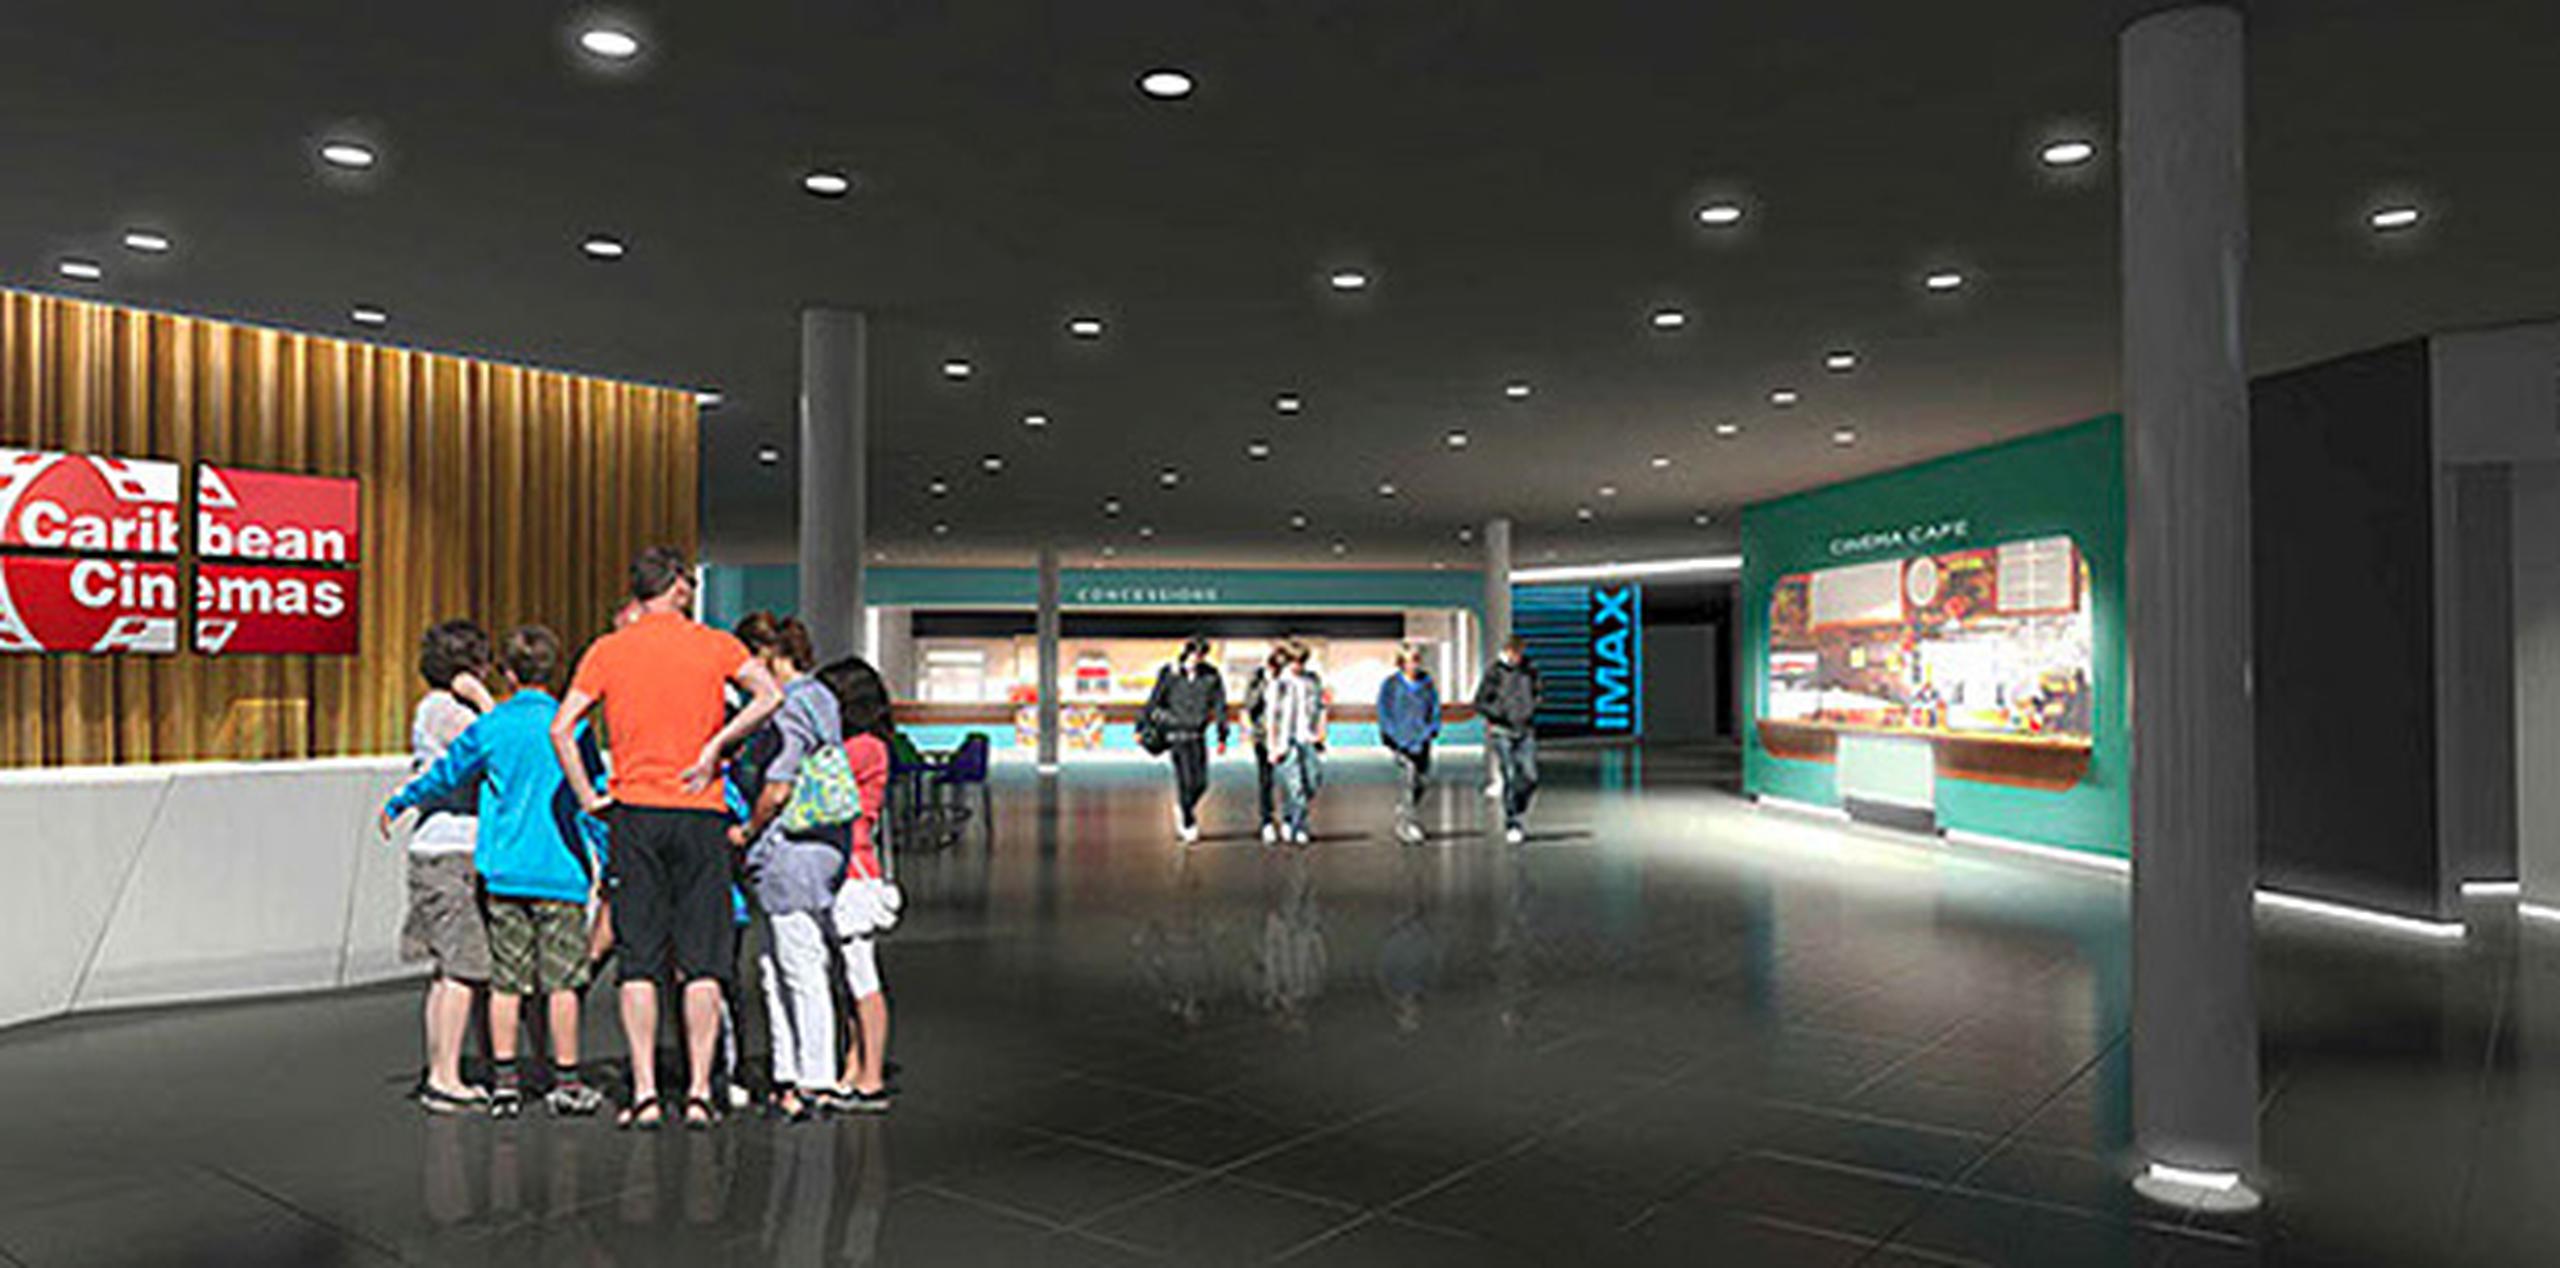 Así luciría el interior de los renovados cines de Montehiedra, que contará con nuevas salas con tecnología IMAX y 4DX. (Suministrada)